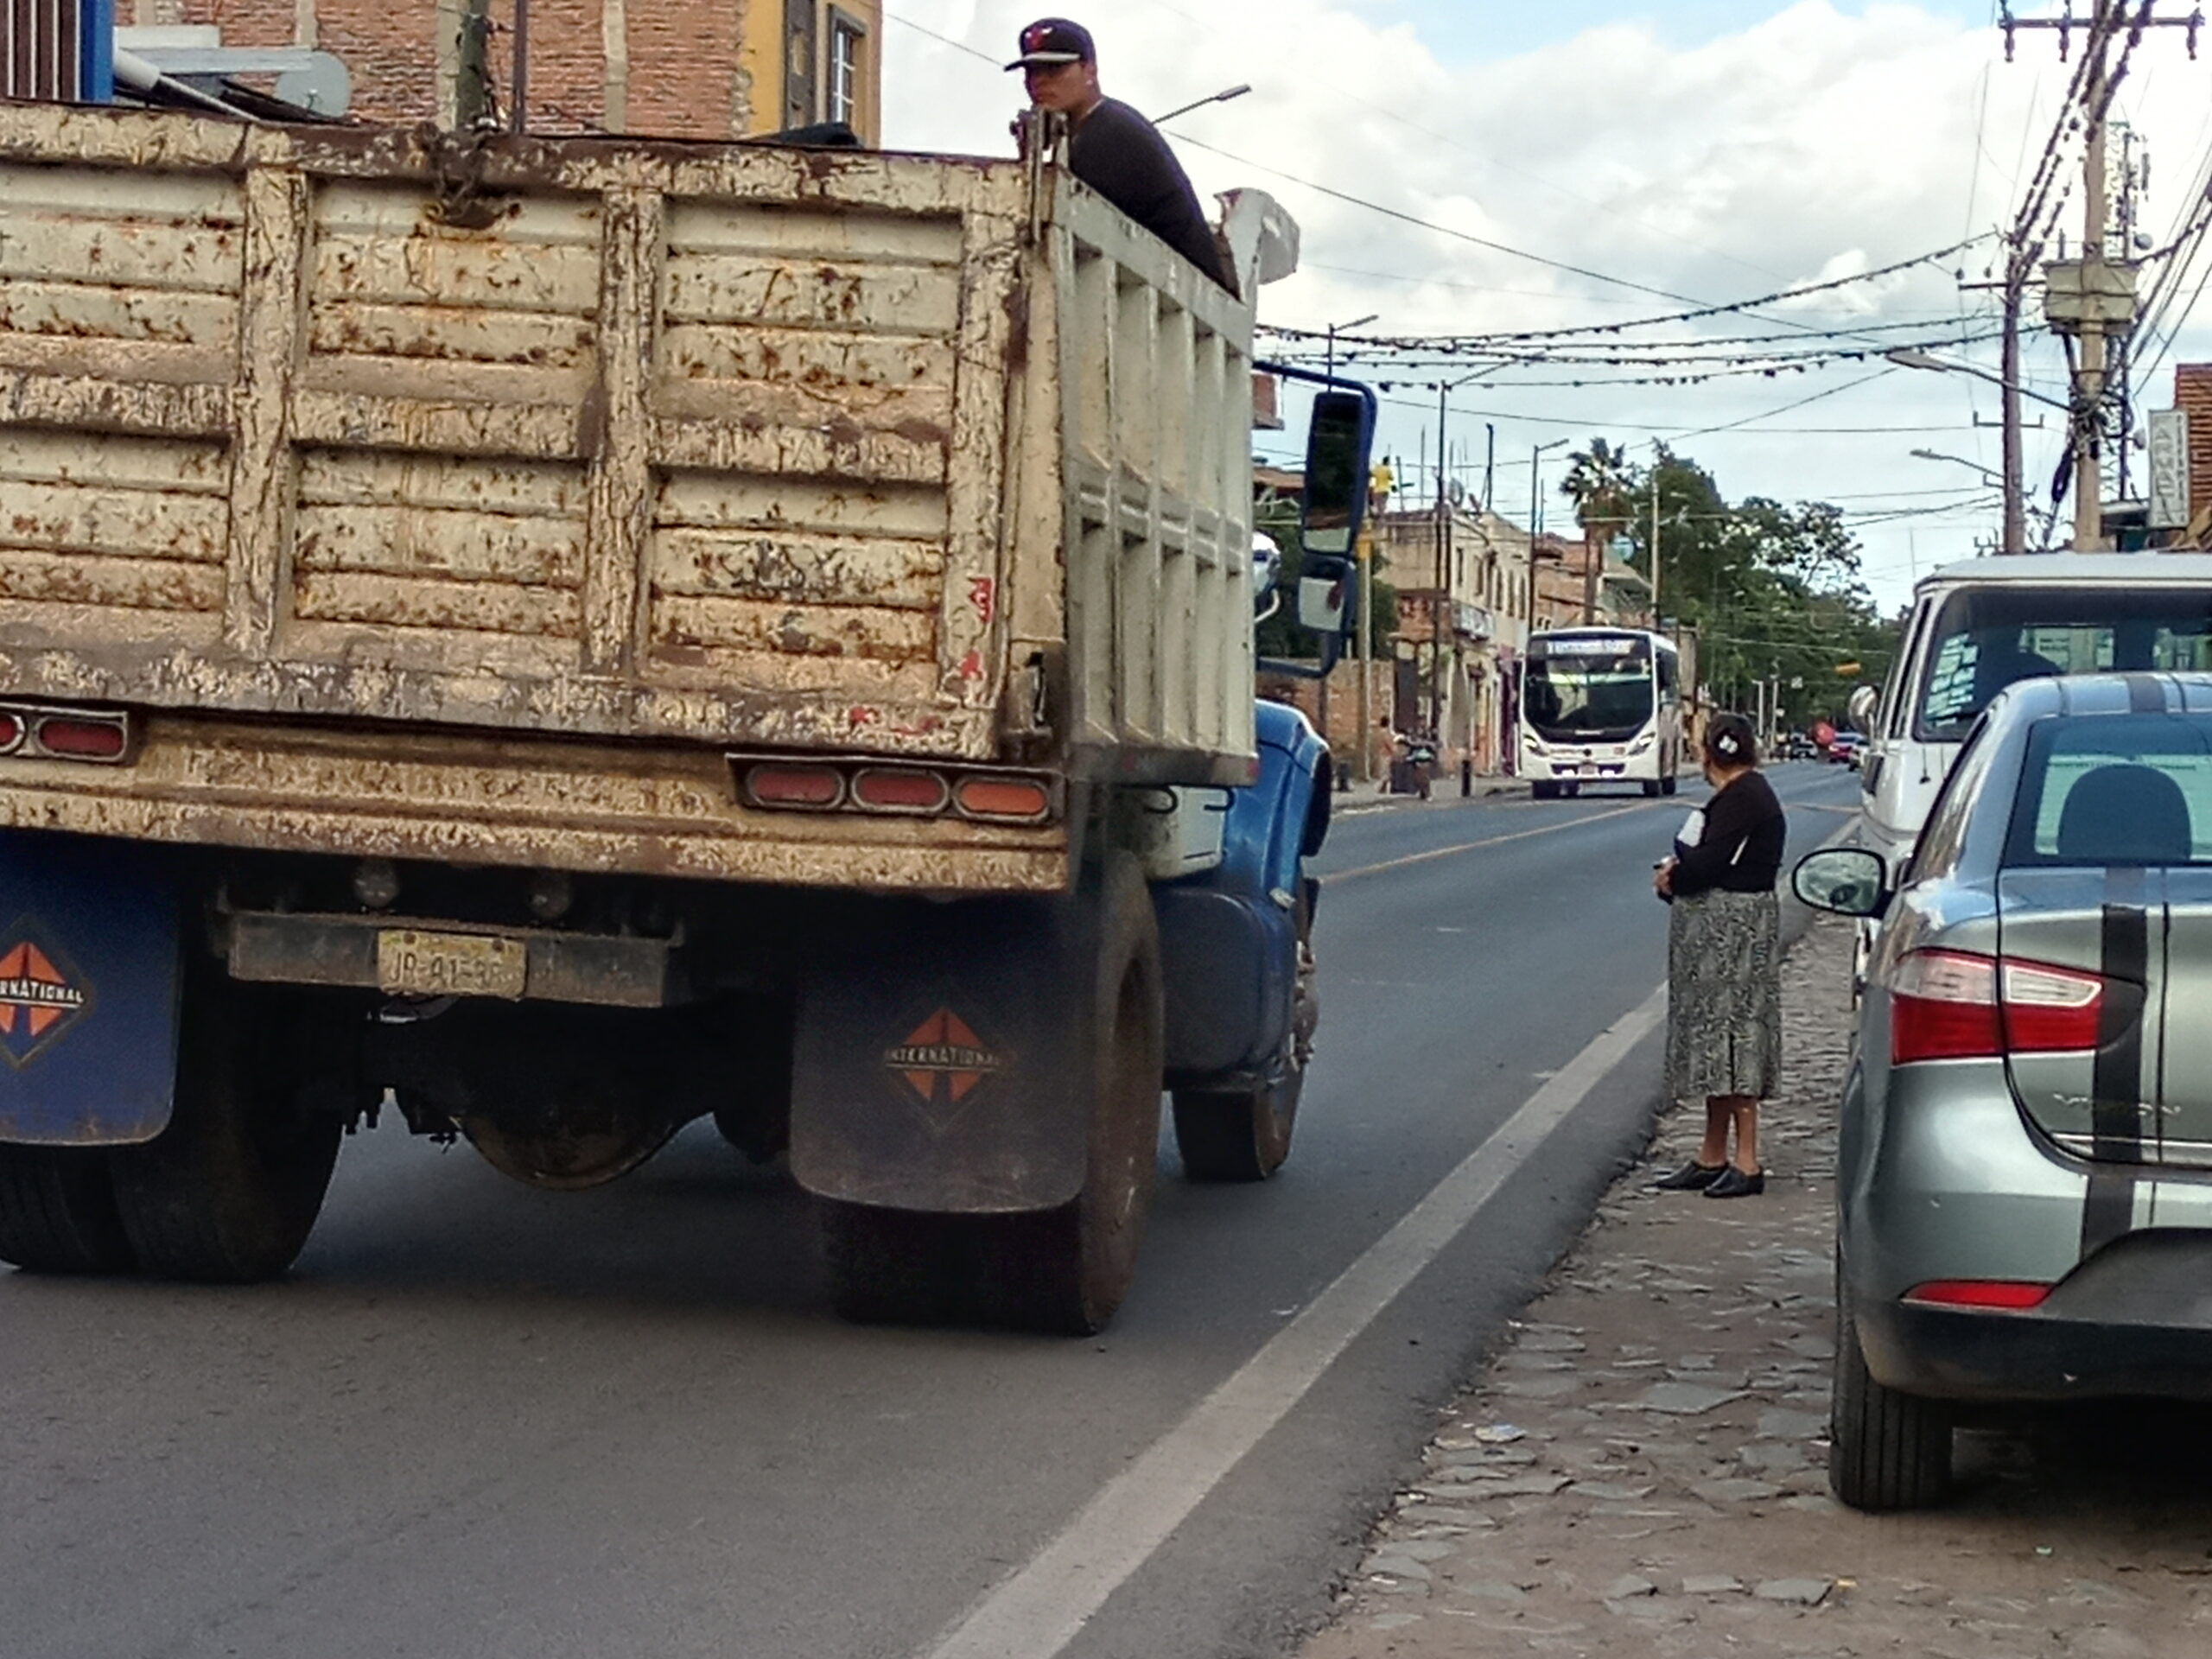 Crossing the road in San Juan Cosalá is a growing danger